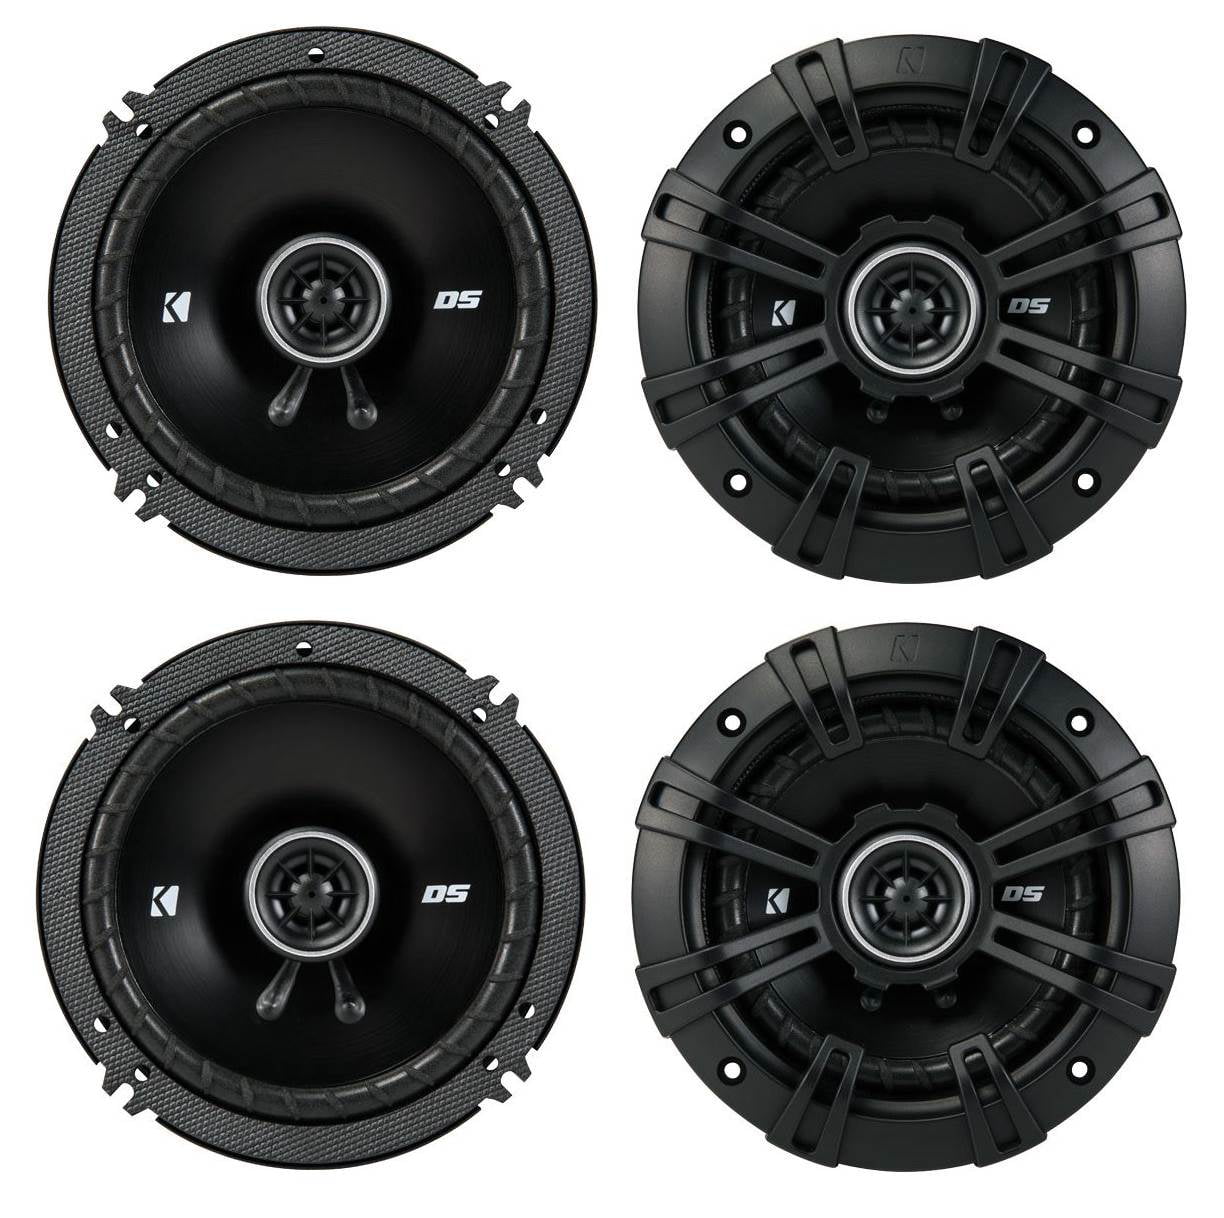 240W Peak Power43DSC6504 Kicker DS Series 6-1/2" 2-way Car Speakers 